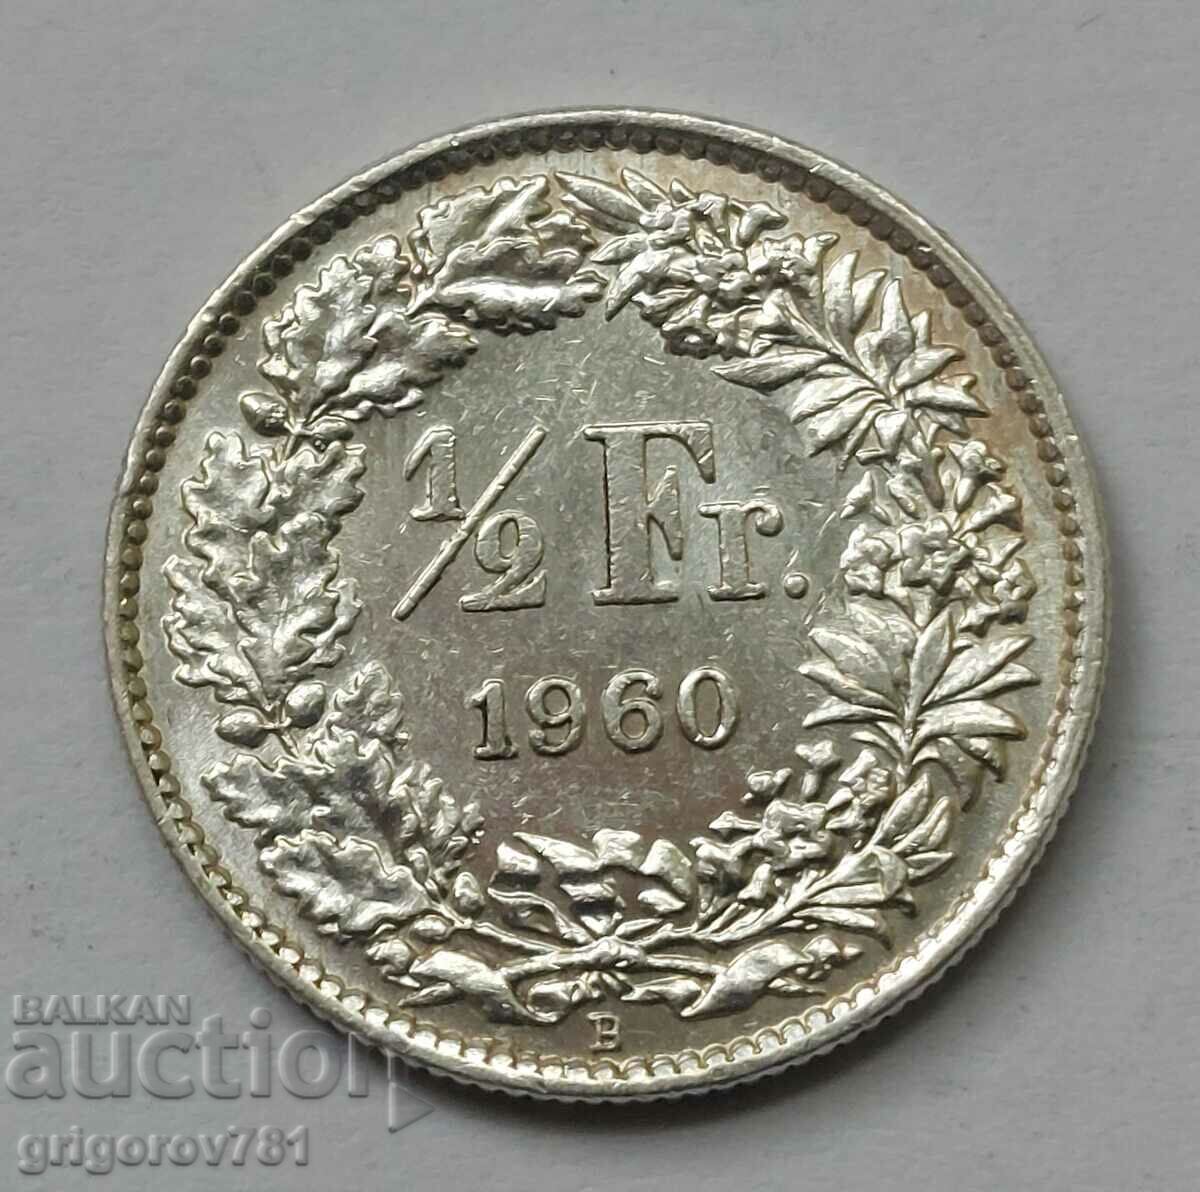 Ασημένιο φράγκο 1/2 Ελβετία 1960 B - Ασημένιο νόμισμα #92